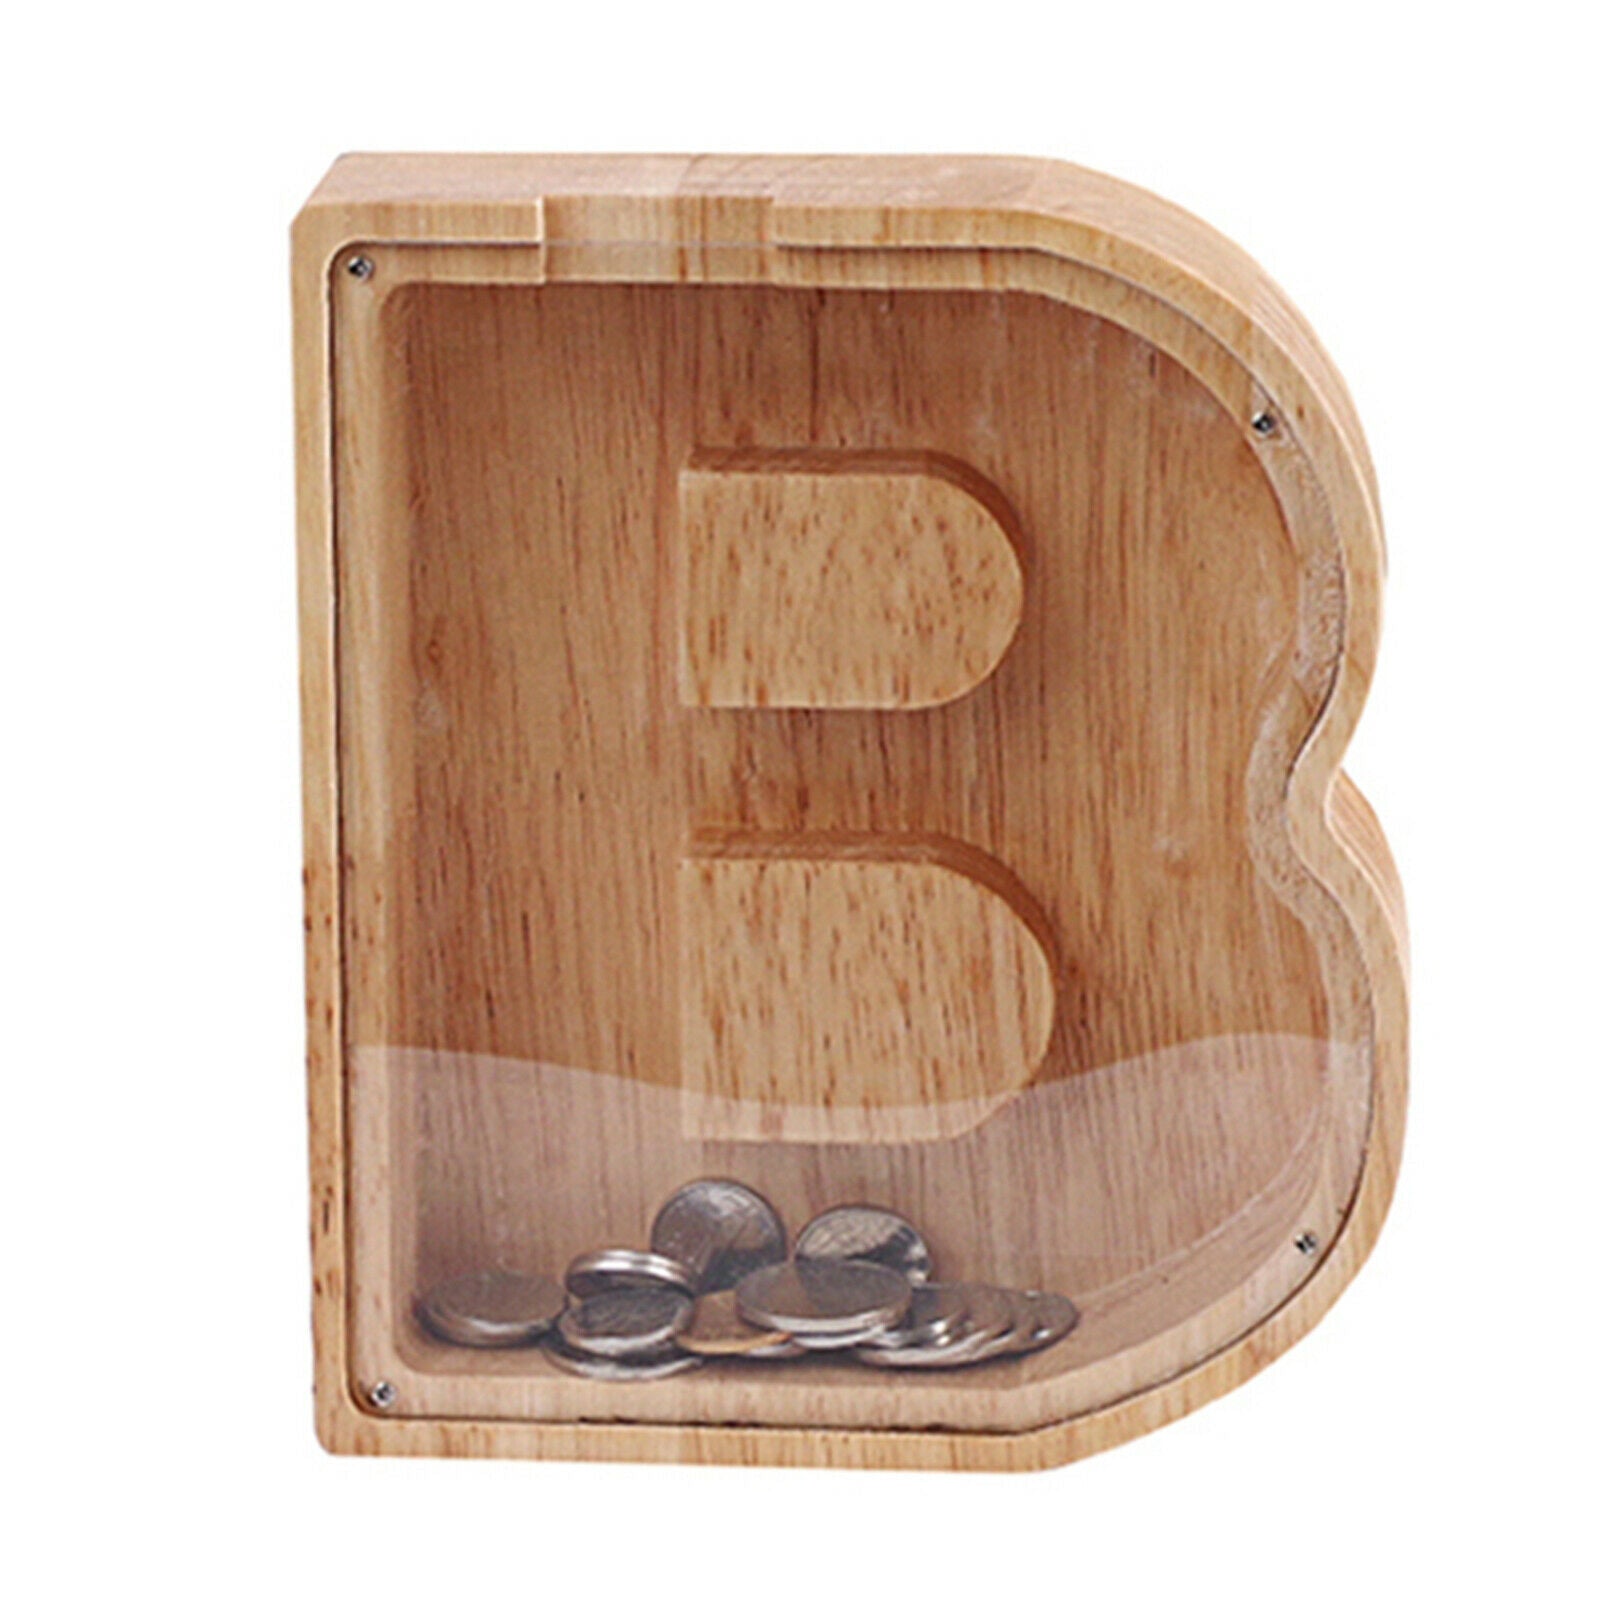 Wooden Letter B Shape Piggy Bank Coin Savings Box,